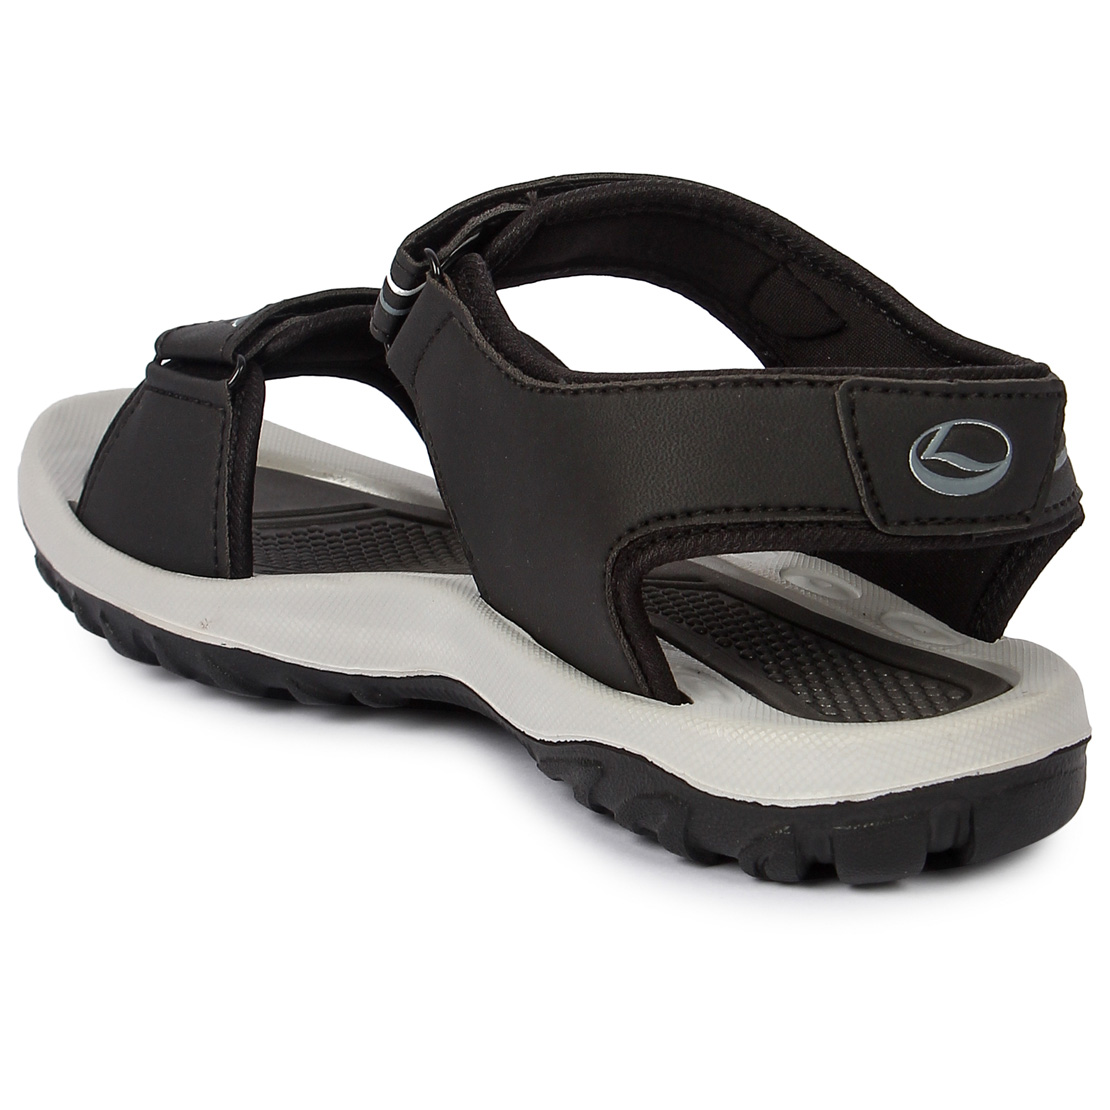 Buy Lancer Men's Black/Grey Sports Sandal & Floaters Online @ ₹499 from ...